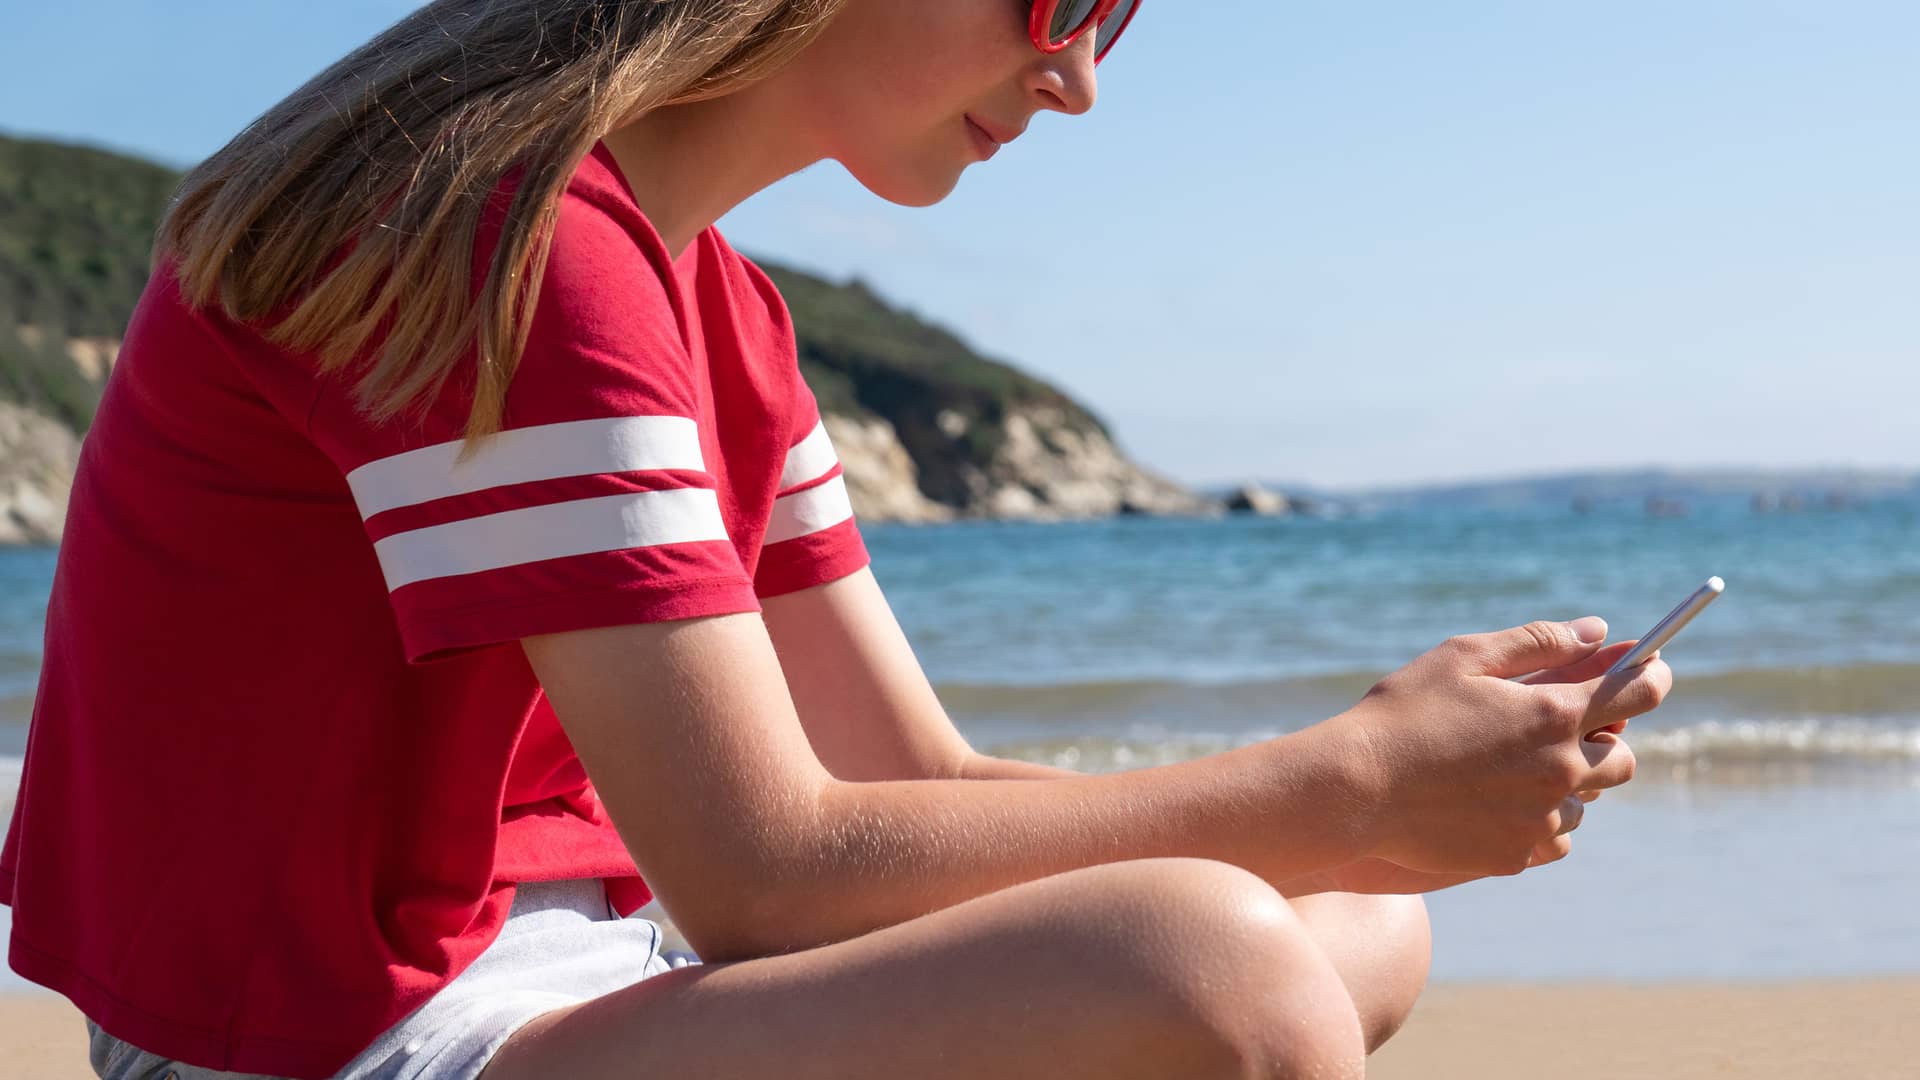 Adolescente en vacaciones navegando por internet con su smartphone gracias a wifi vacaciones de euskaltel